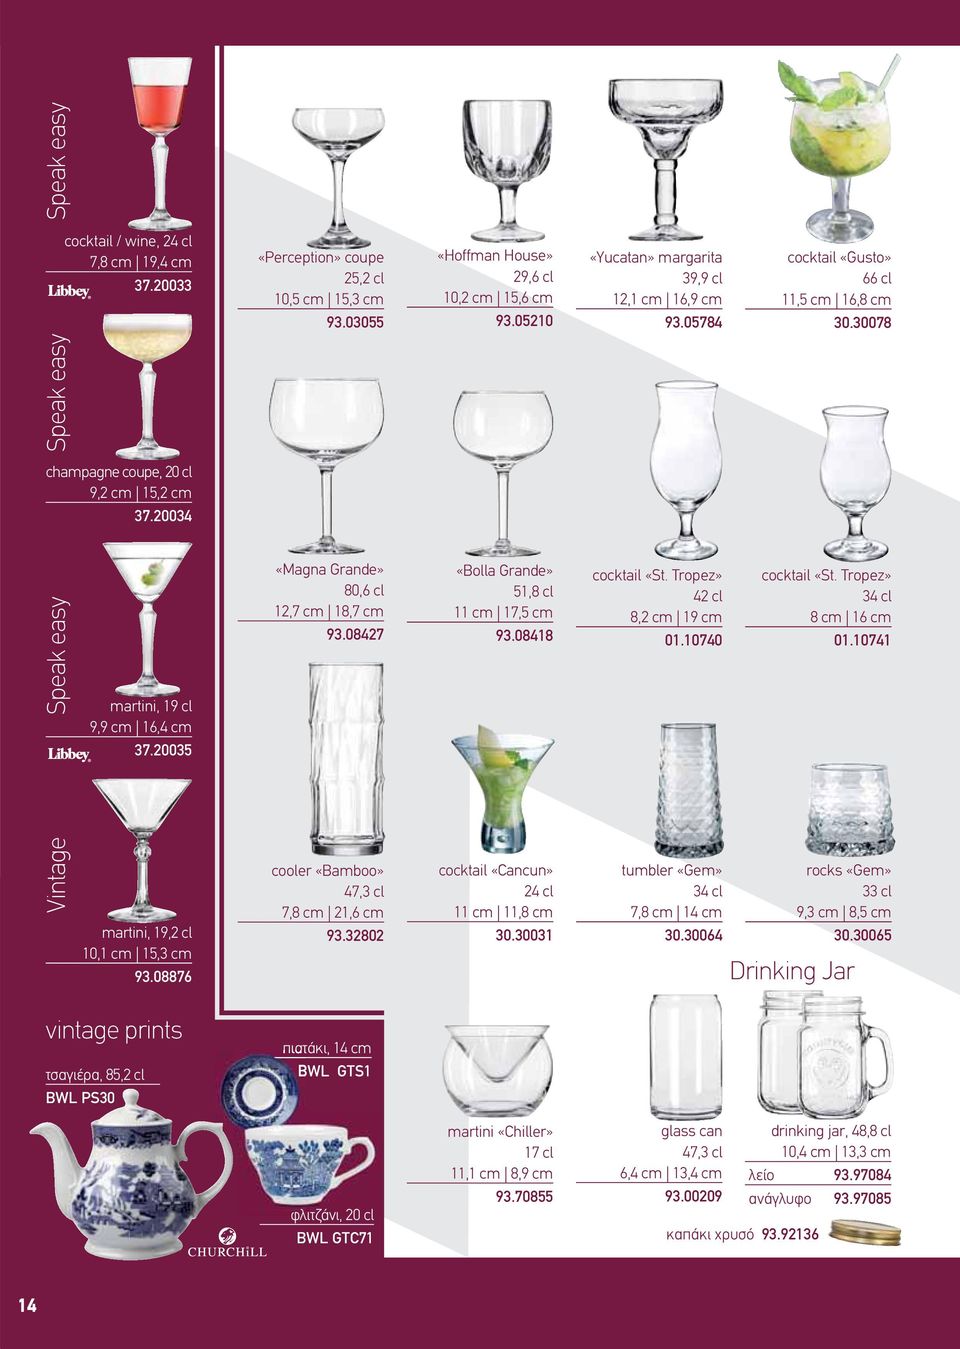 20034 martini, 19 cl 9,9 cm 16,4 cm 37.20035 martini, 19,2 cl 10,1 cm 15,3 cm 93.08876 «Magna Grande» 80,6 cl 12,7 cm 18,7 cm 93.08427 cooler «Bamboo» 47,3 cl 7,8 cm 21,6 cm 93.